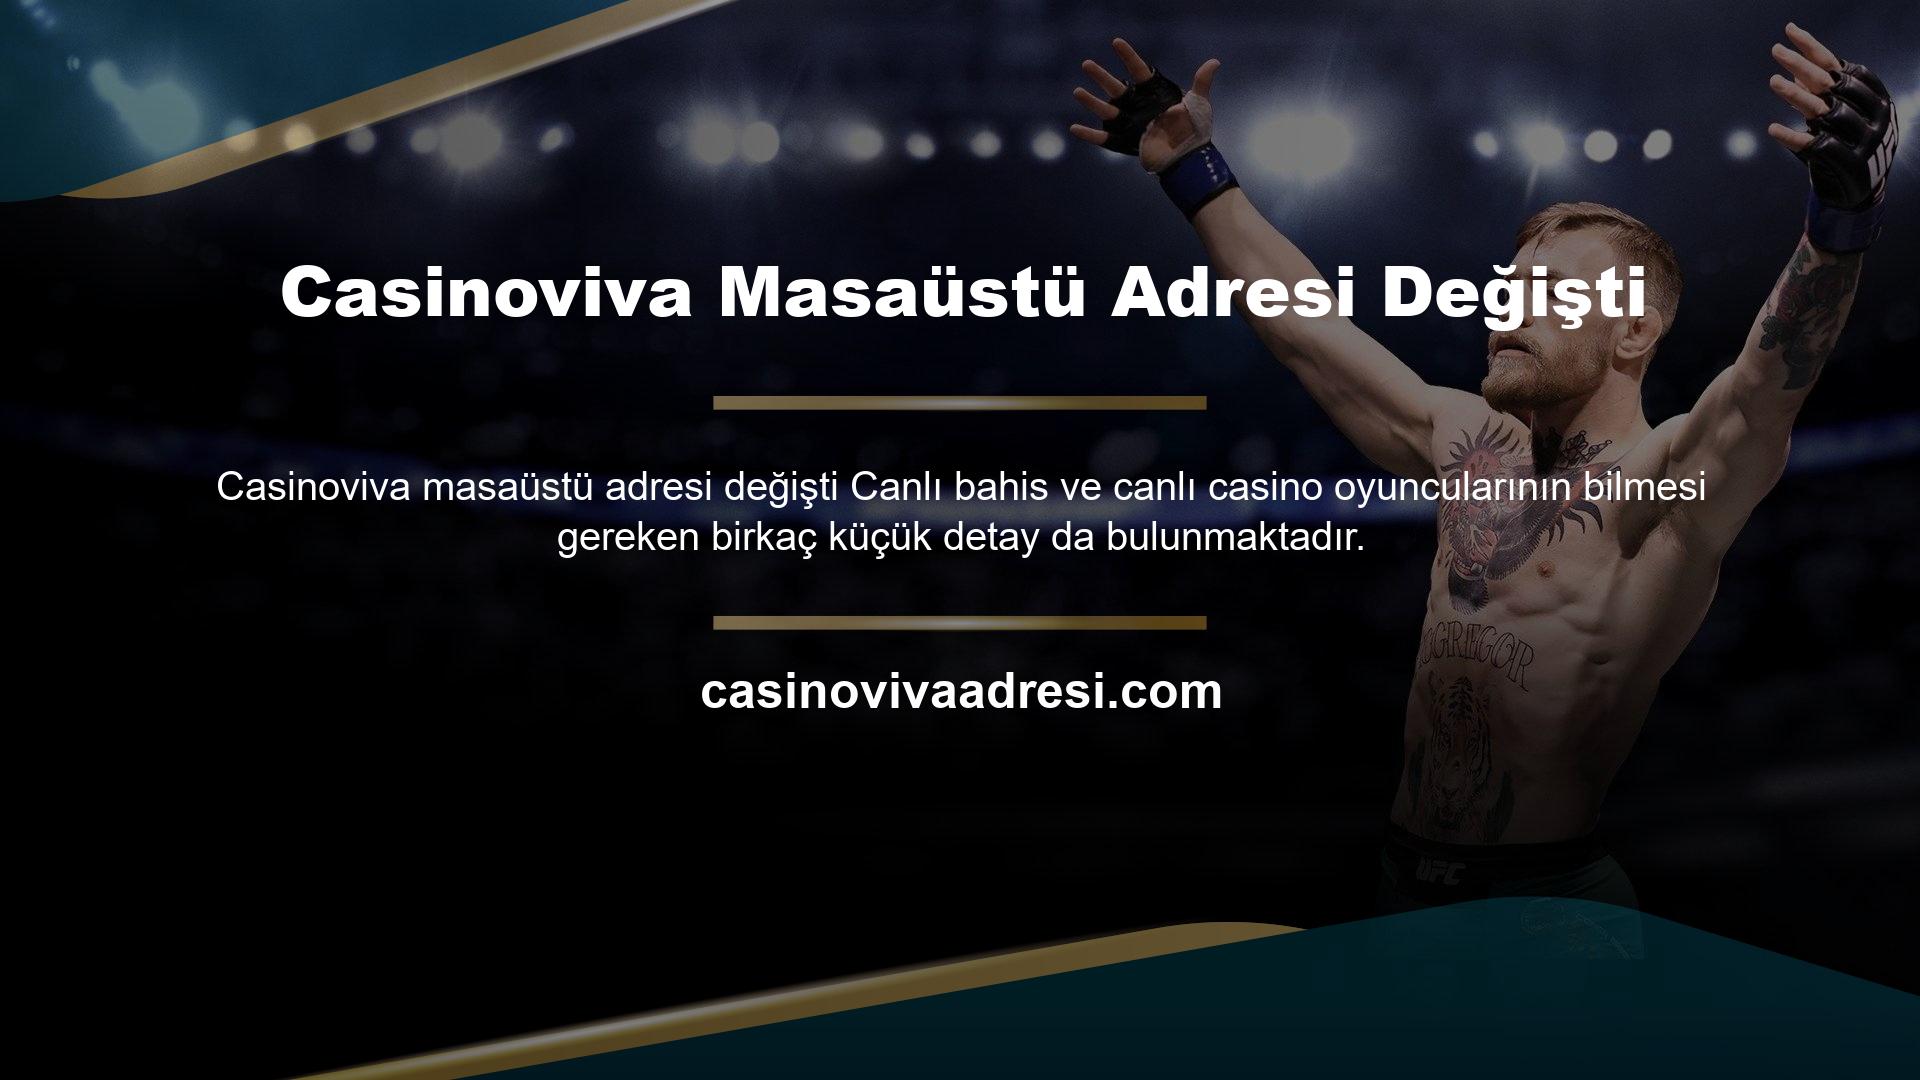 Casinoviva Masaüstü Adresi Değişti Canlı bahis ve canlı kumarhane işlemleri devlet kontrolündedir ve bu işletmeler ayrıca bir lisans gerektirir